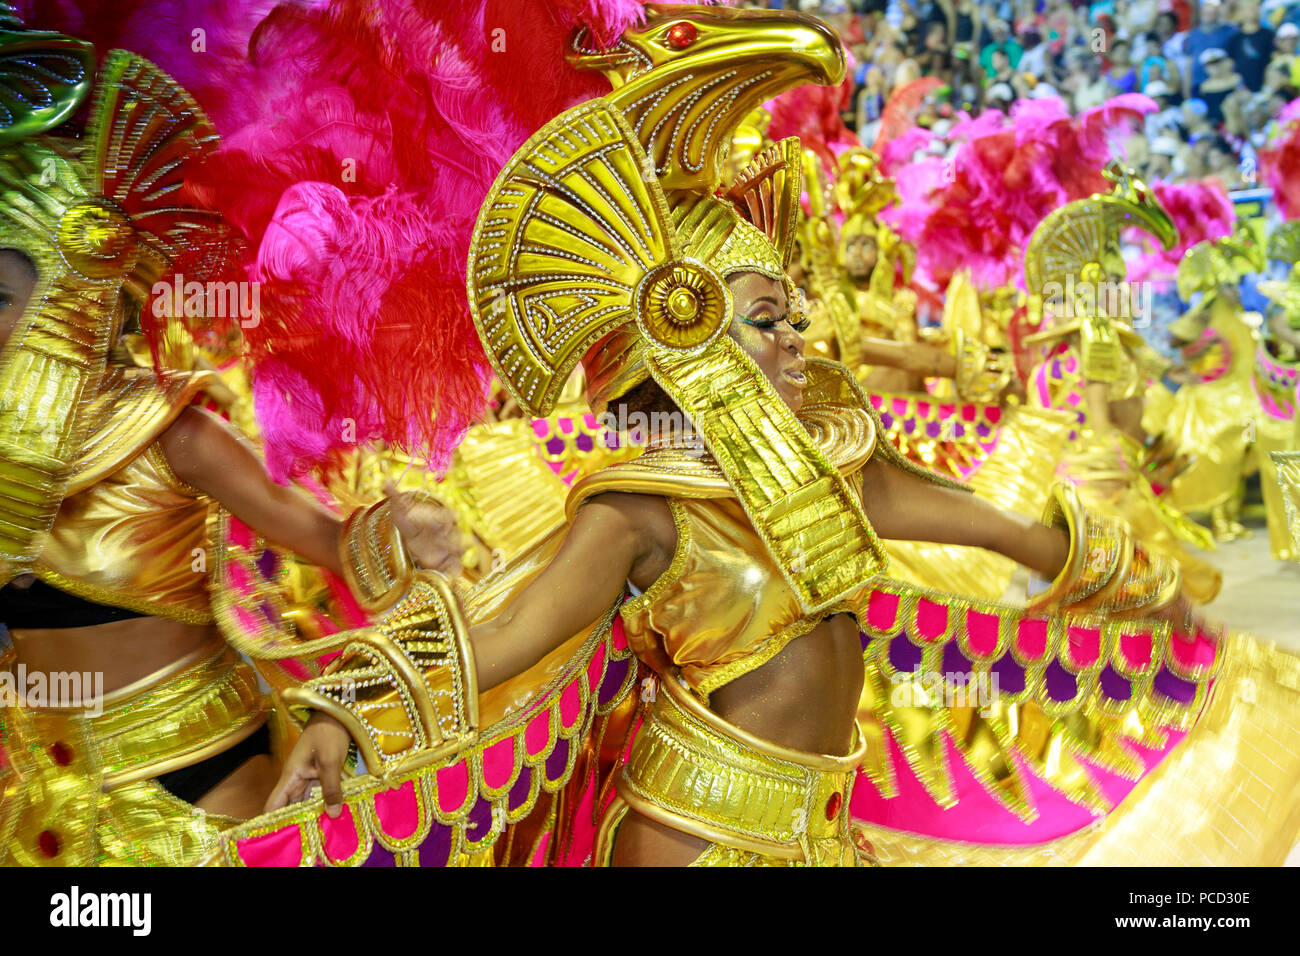 Ballerini di principale Rio de Janeiro sfilata di carnevale in Sambadrome (Sambodromo) arena, Rio de Janeiro, Brasile, Sud America Foto Stock